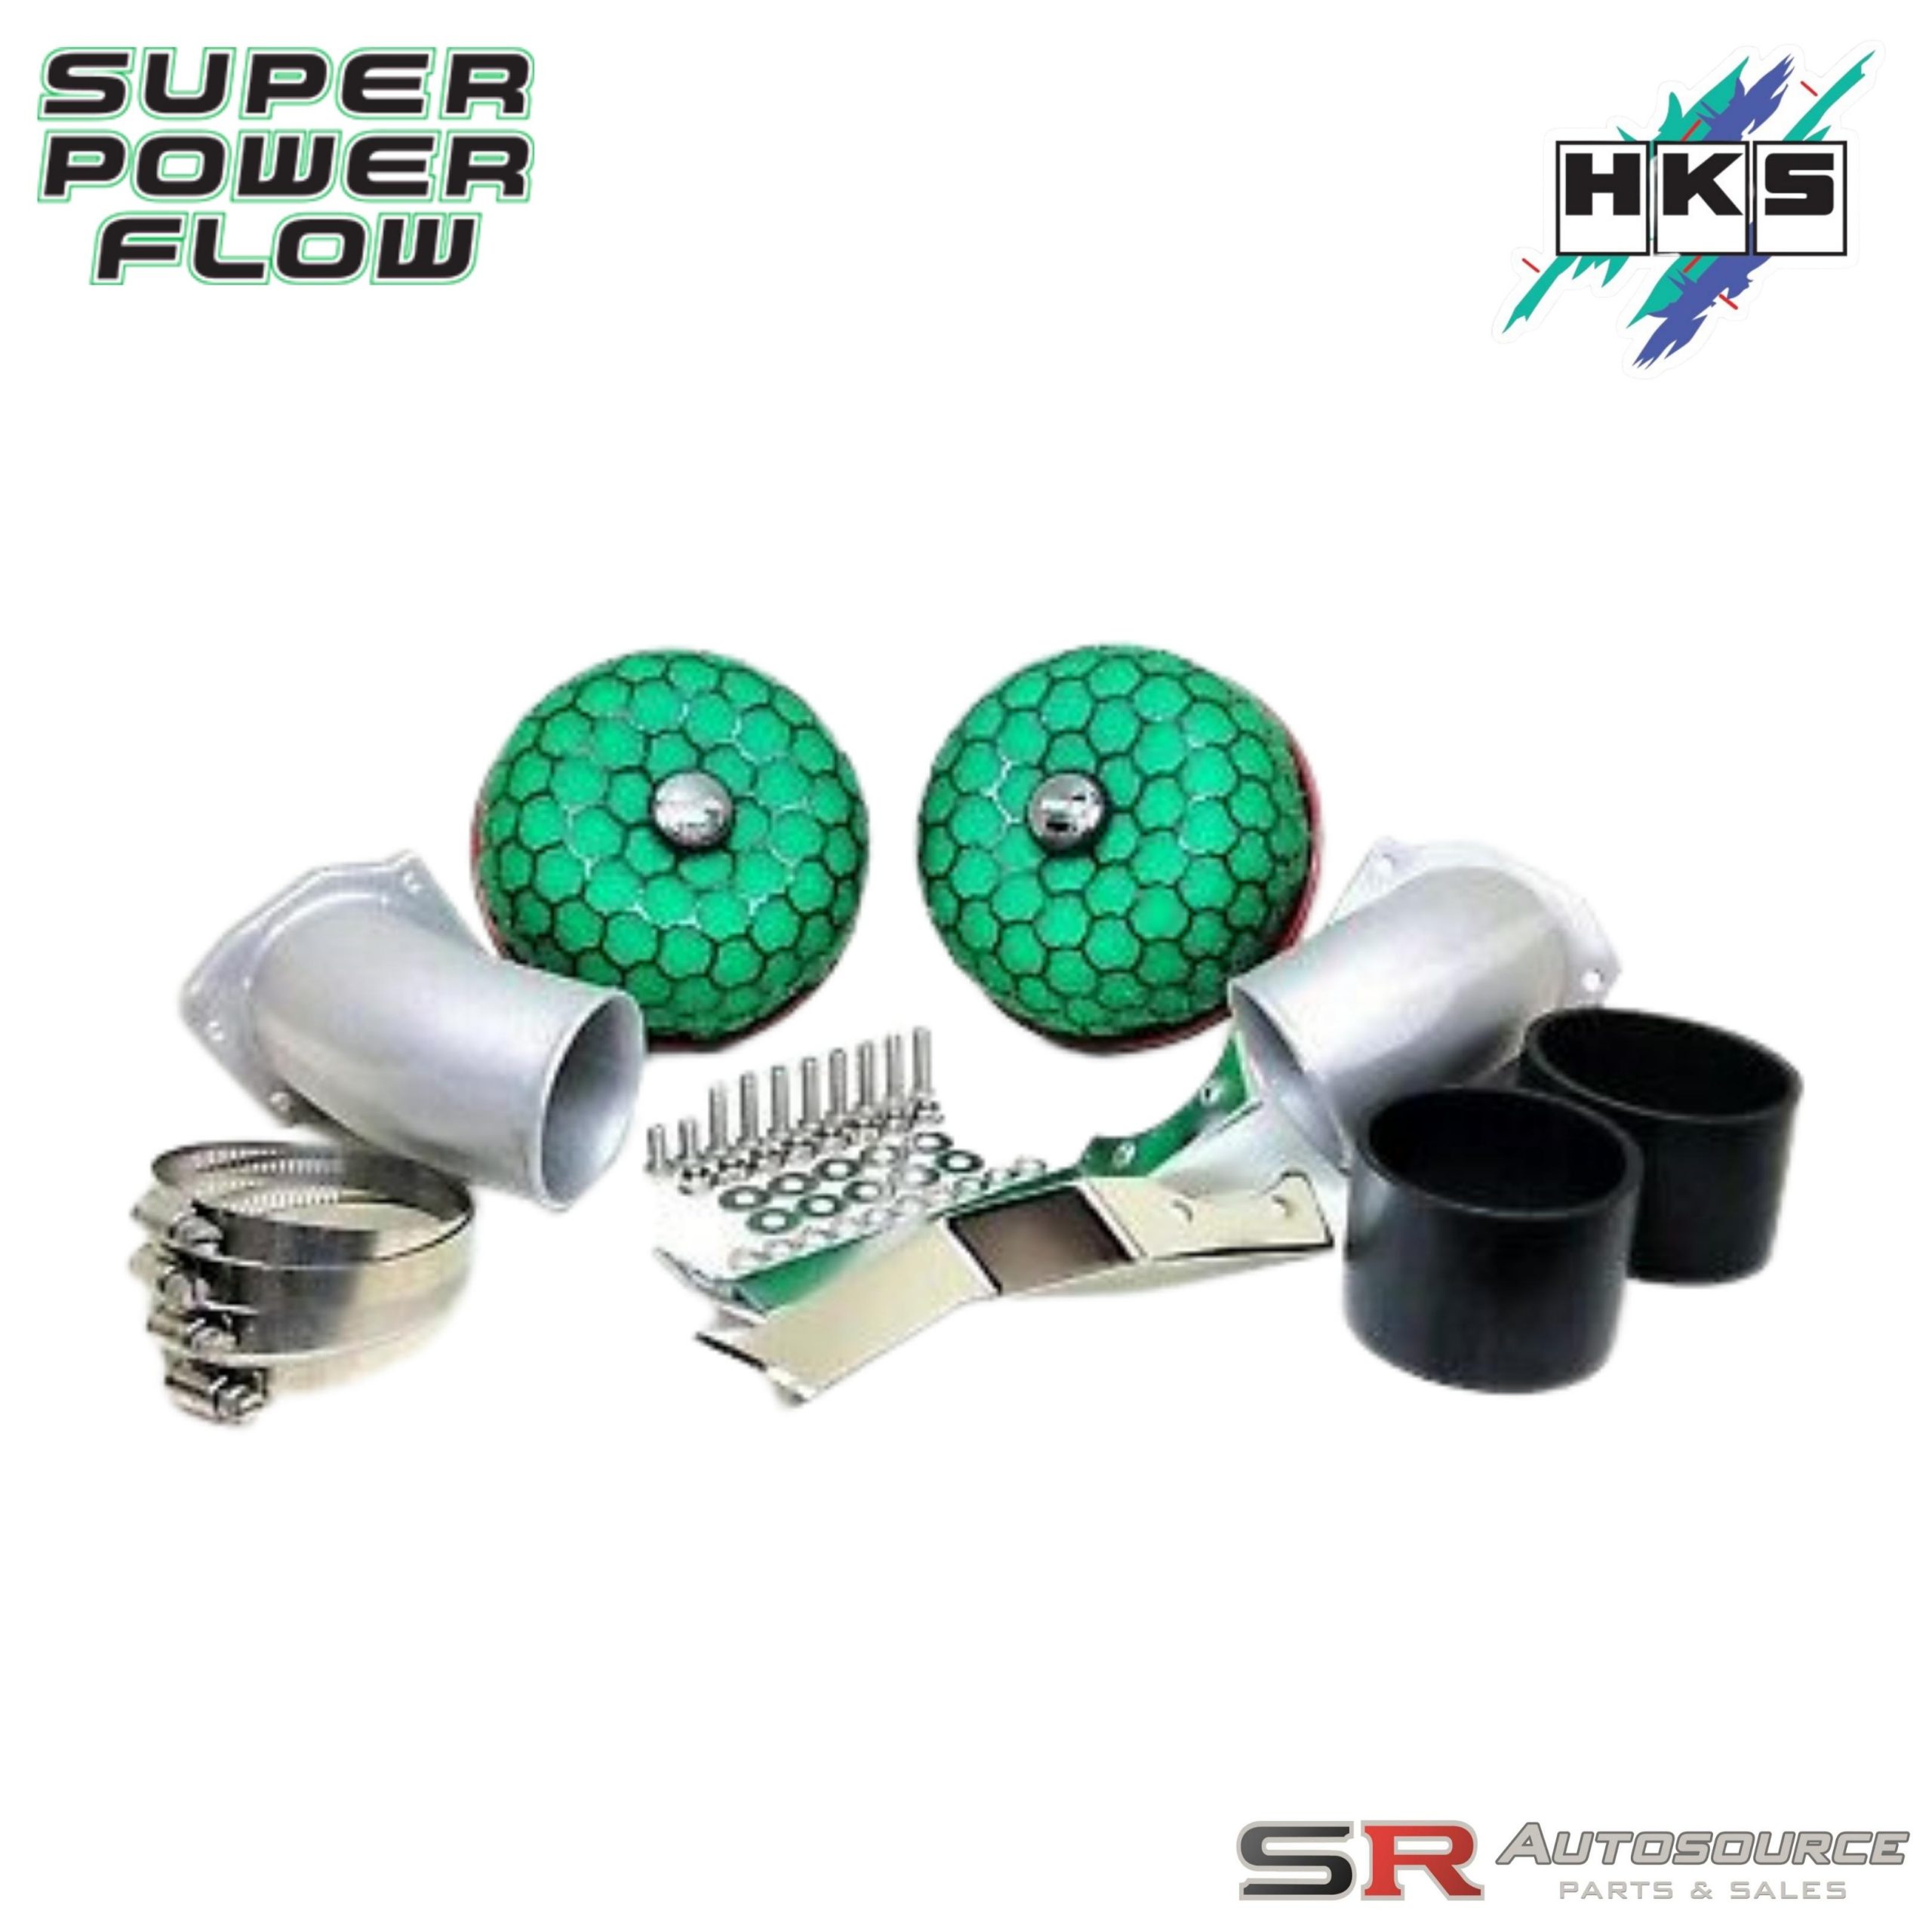 HKS Super Power Flow Intake Kit for Skyline R34 GTR BNR34 RB26DETT